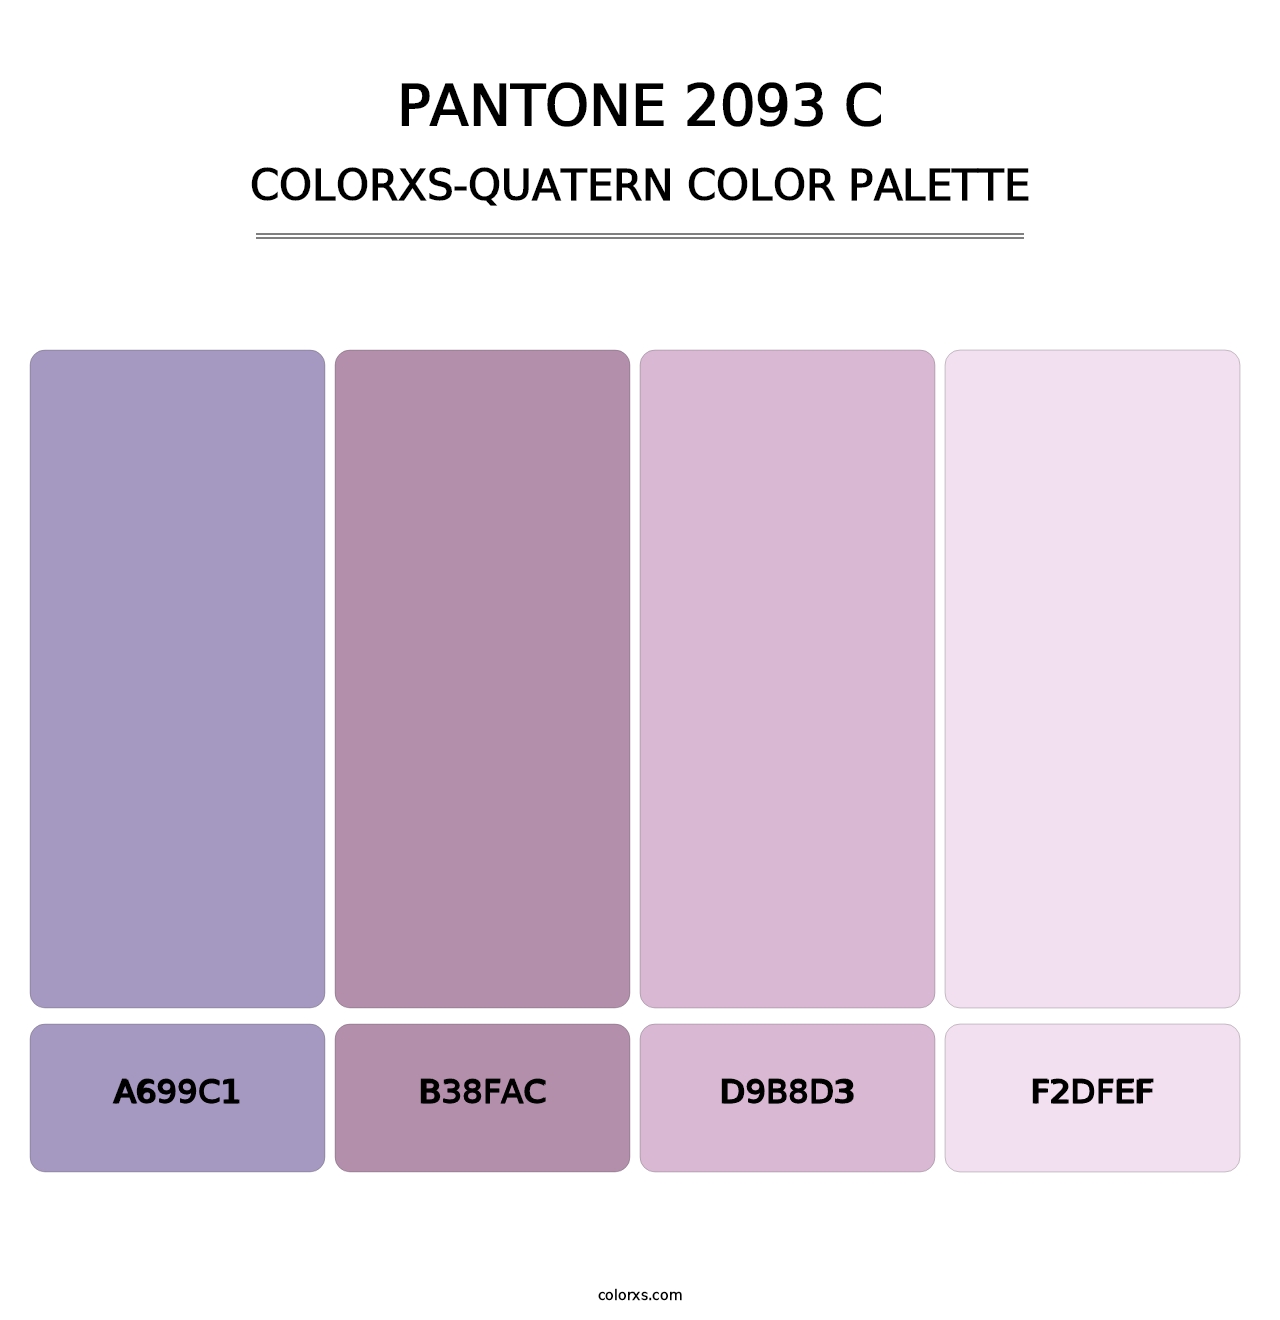 PANTONE 2093 C - Colorxs Quatern Palette